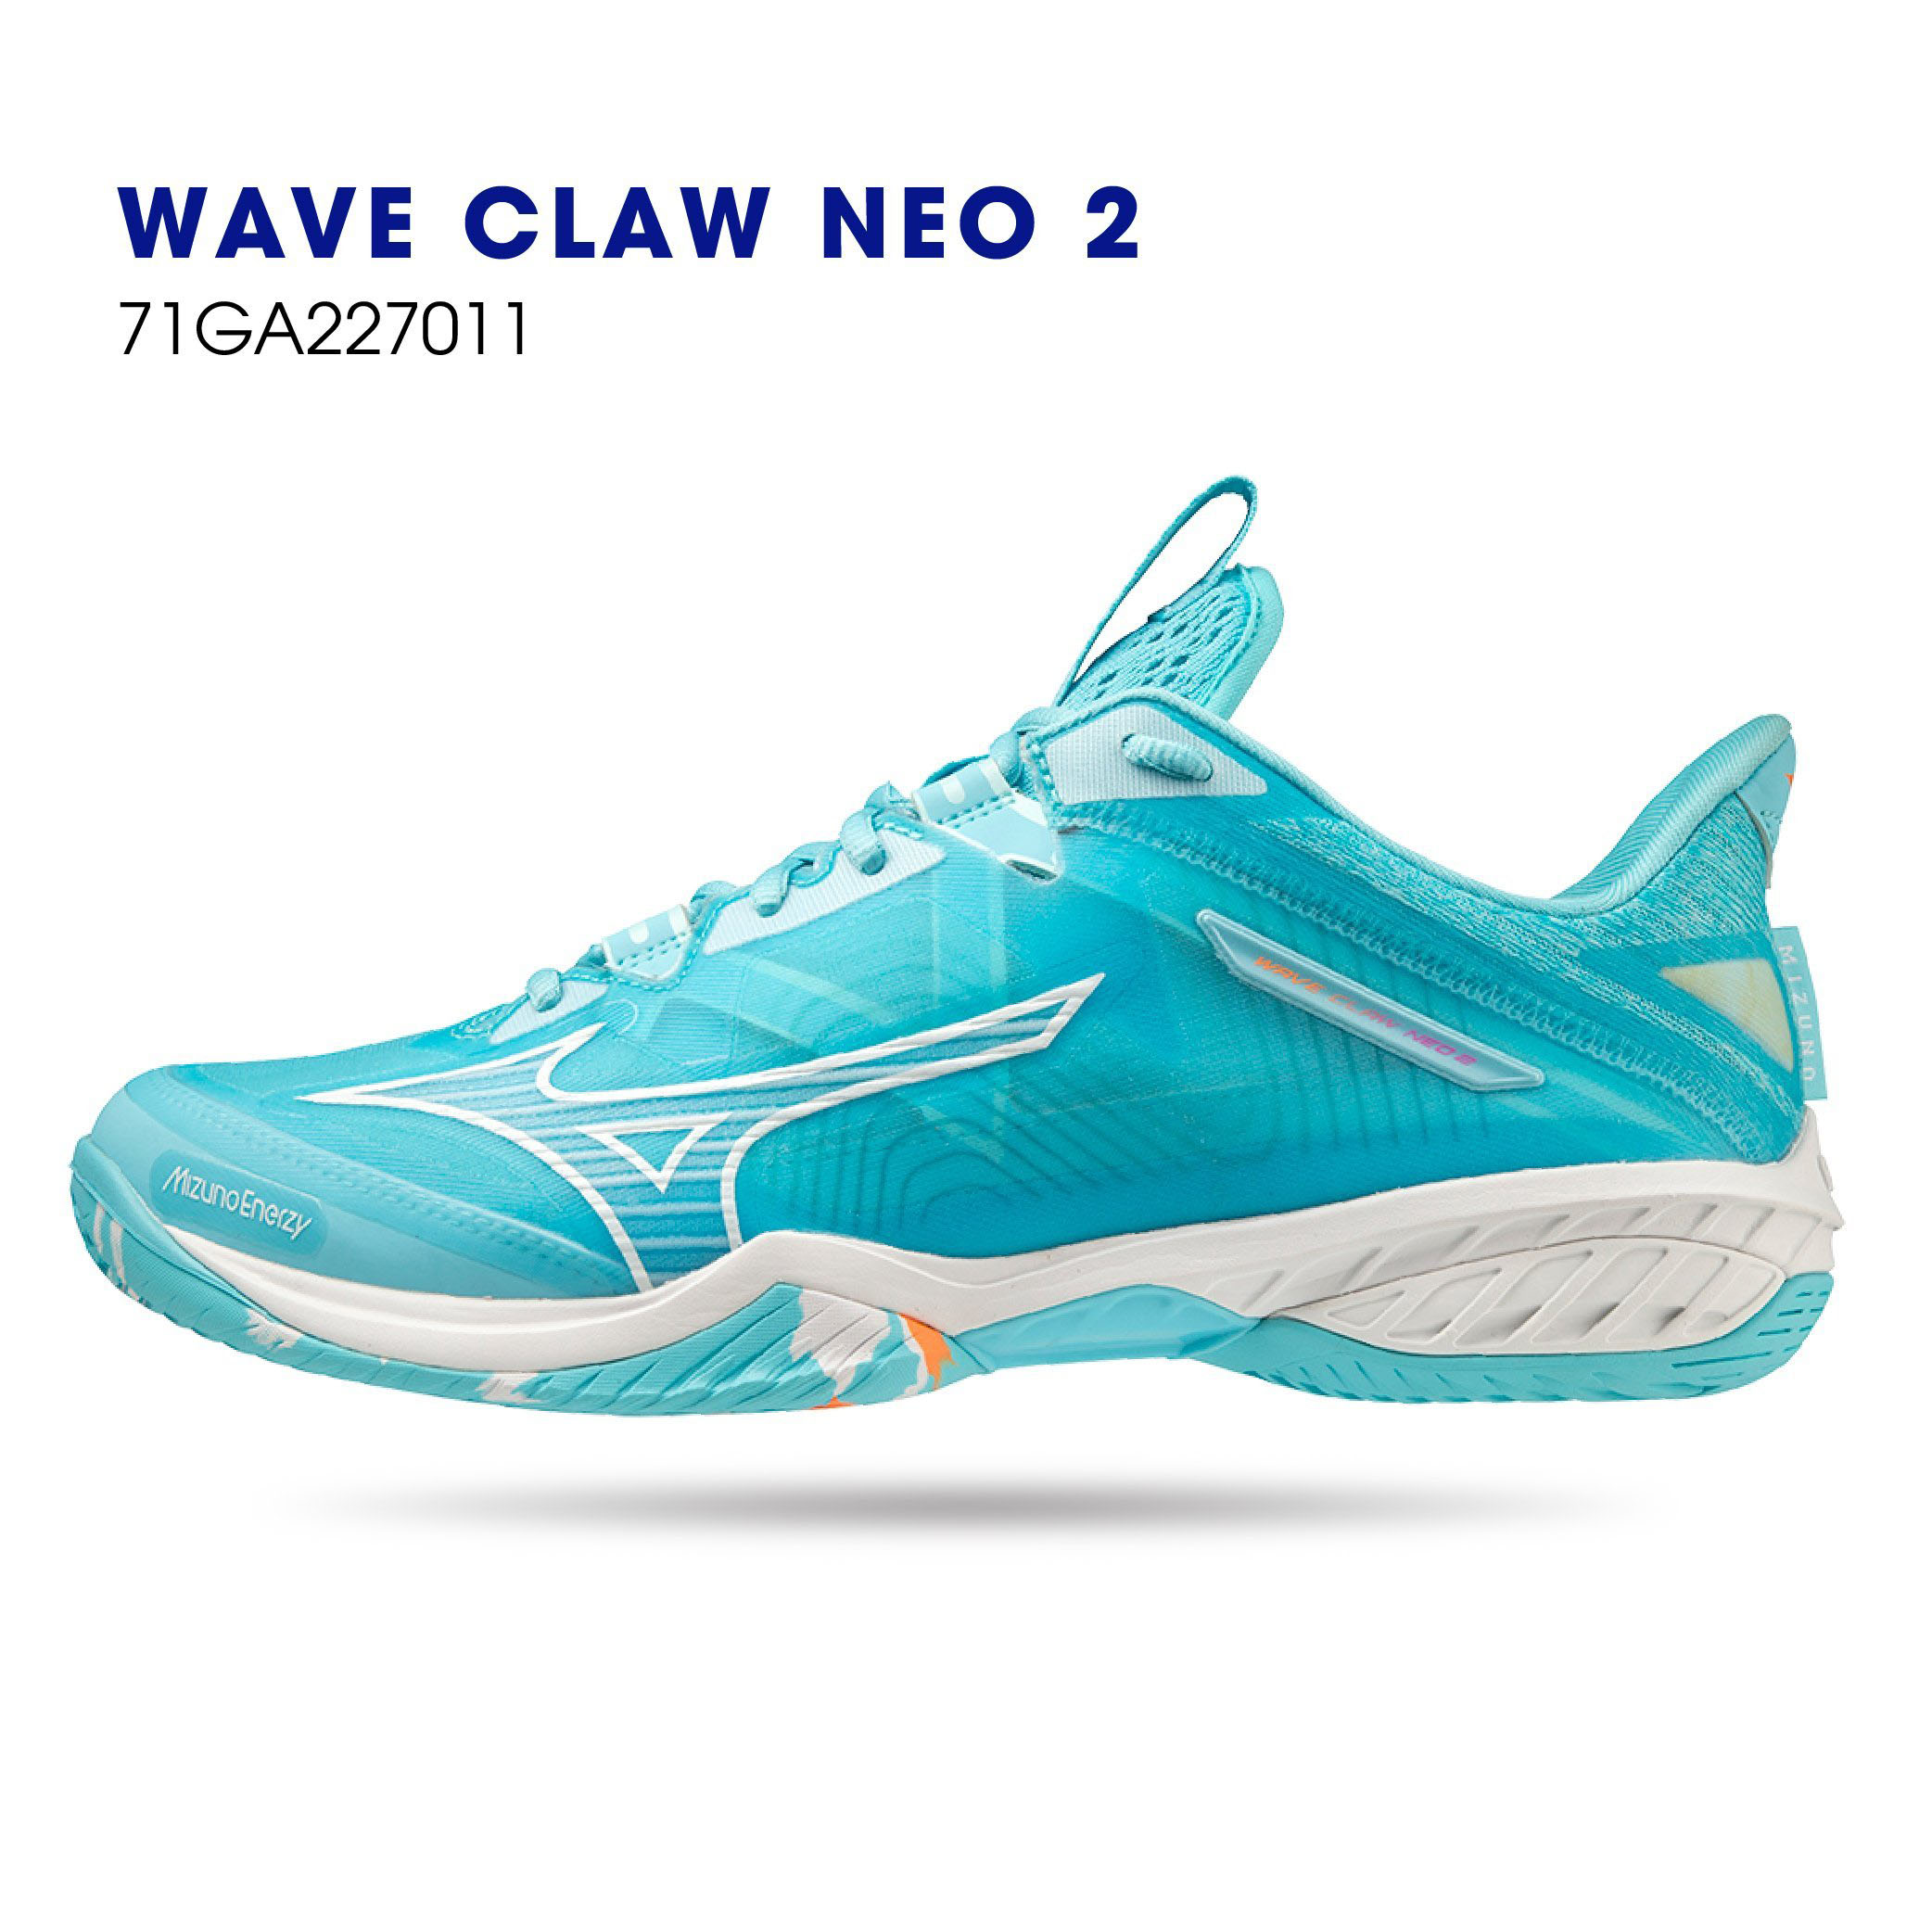 Giày cầu lông Mizuno Chính hãng Wave Claw Neo 2 71GA227011 màu xanh ngọc